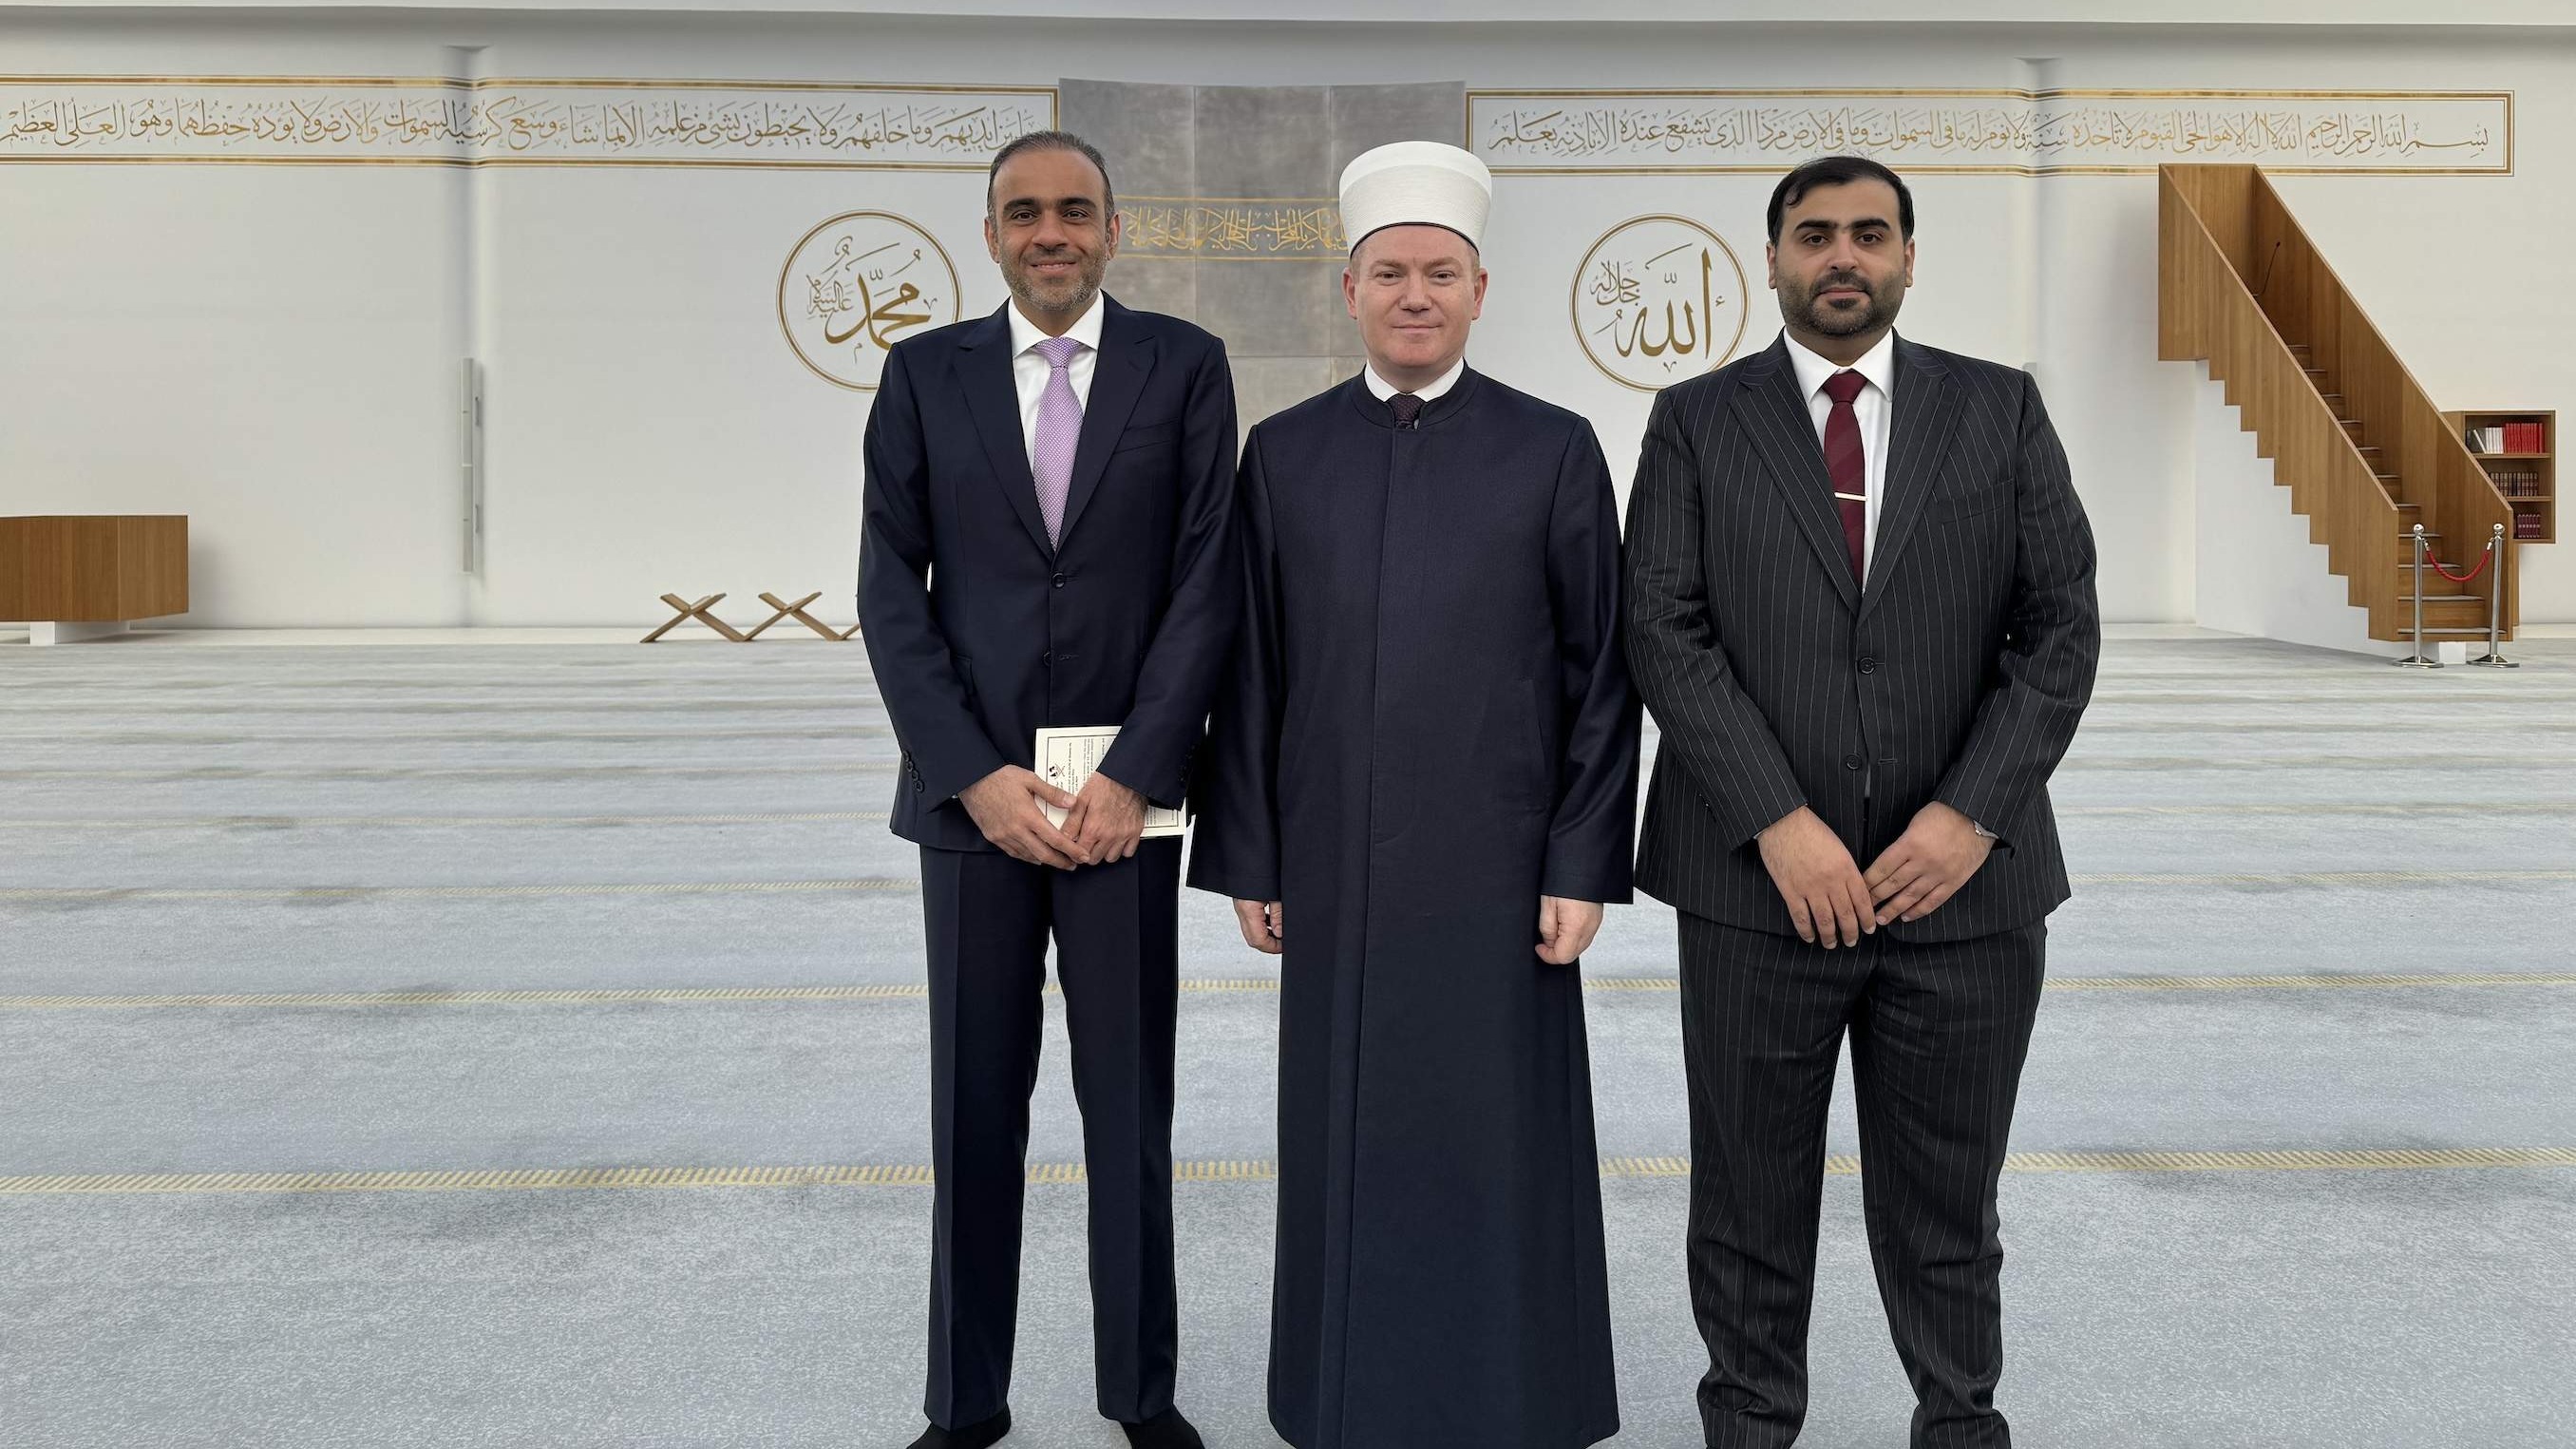 Muftiju Porića posjetio ambasador države Katar u Beču